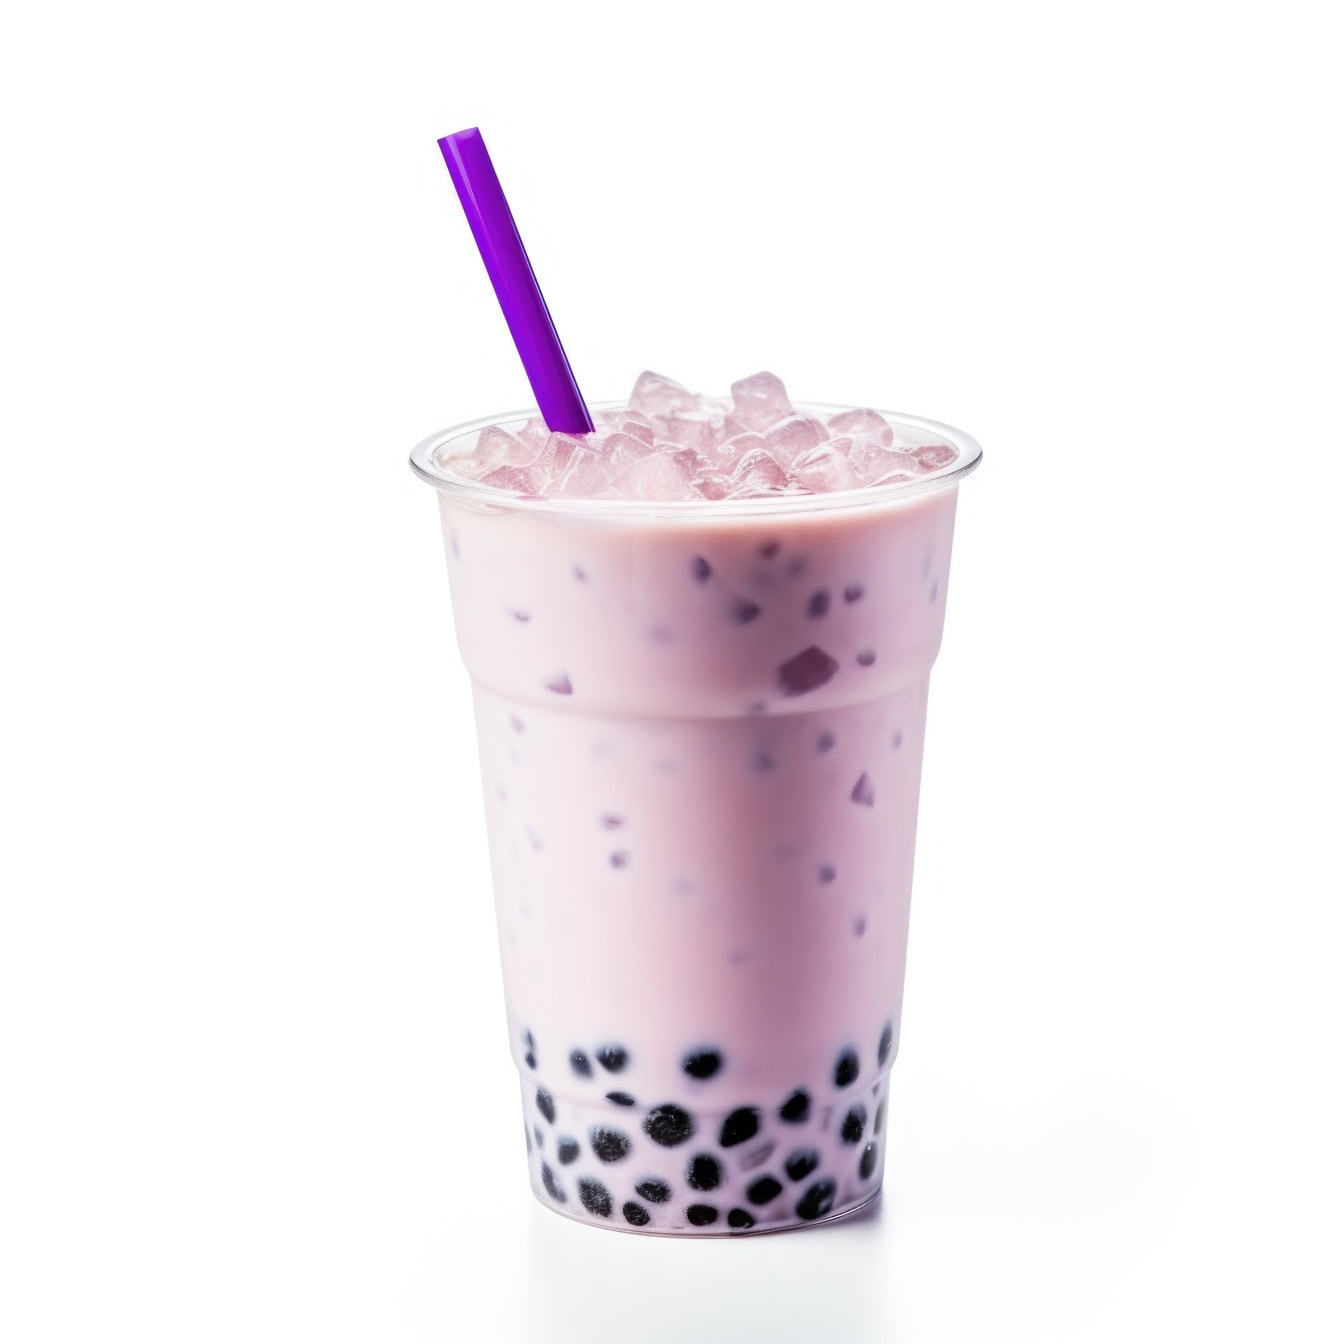 一个塑料杯，新鲜的冷奶茶，用甜香草和冰块调味的芋头，配上一根紫色的吸管